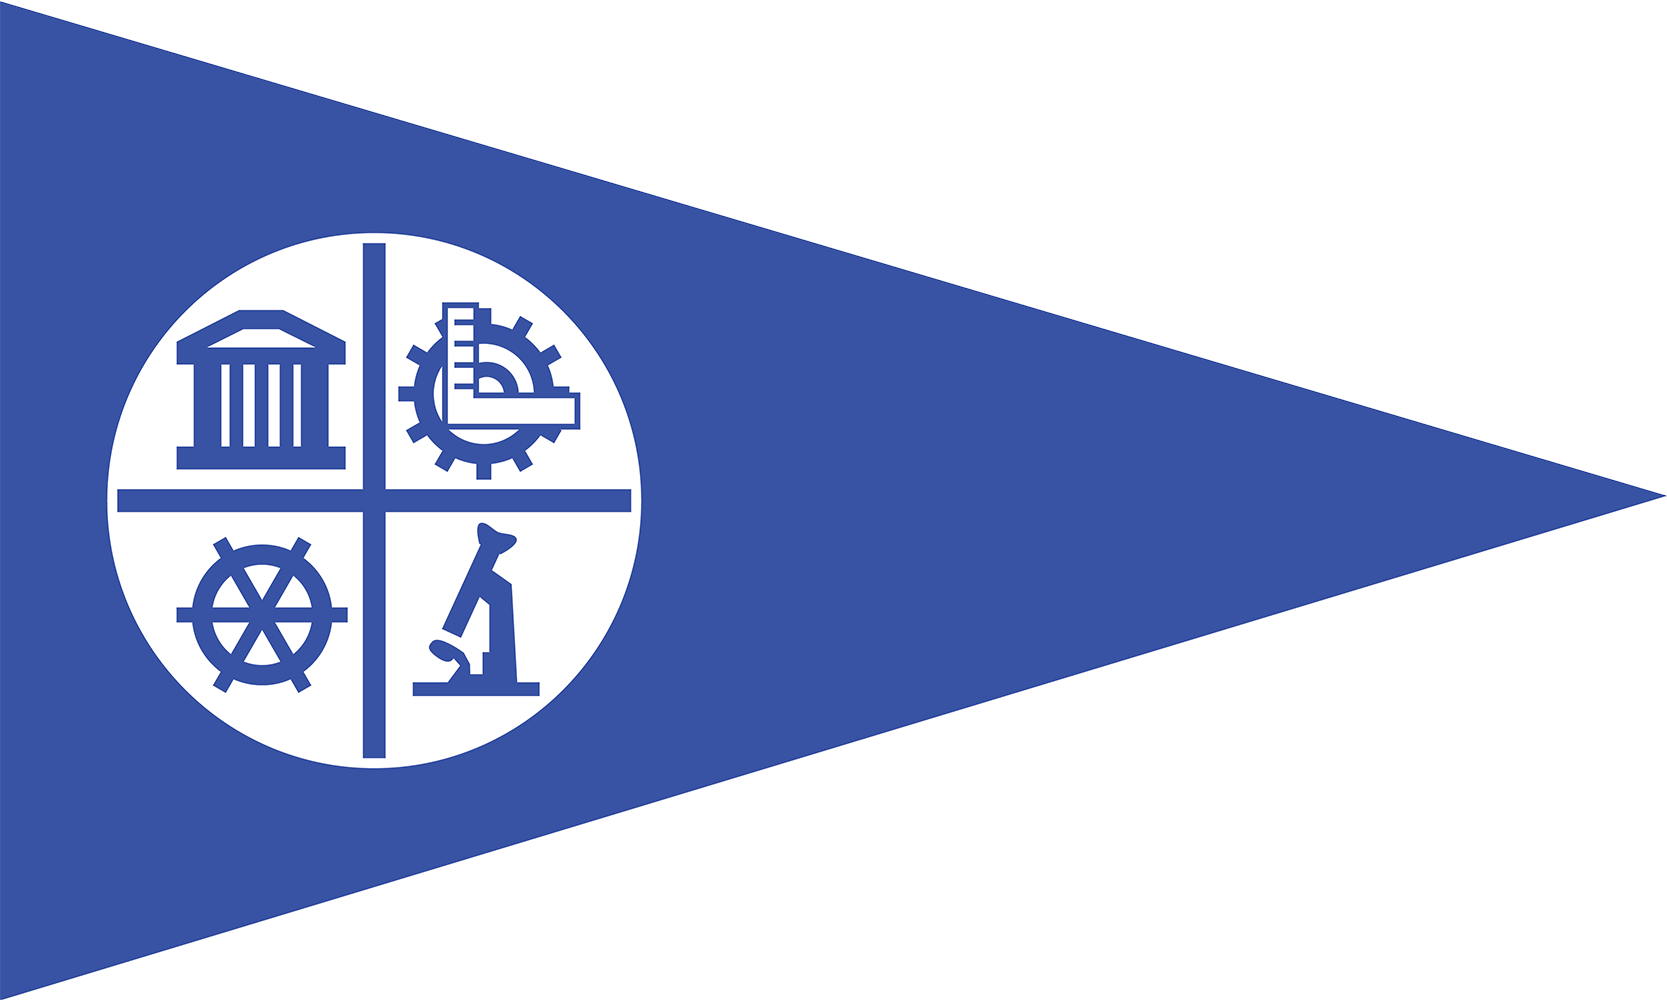 The Flag of Minneapolis